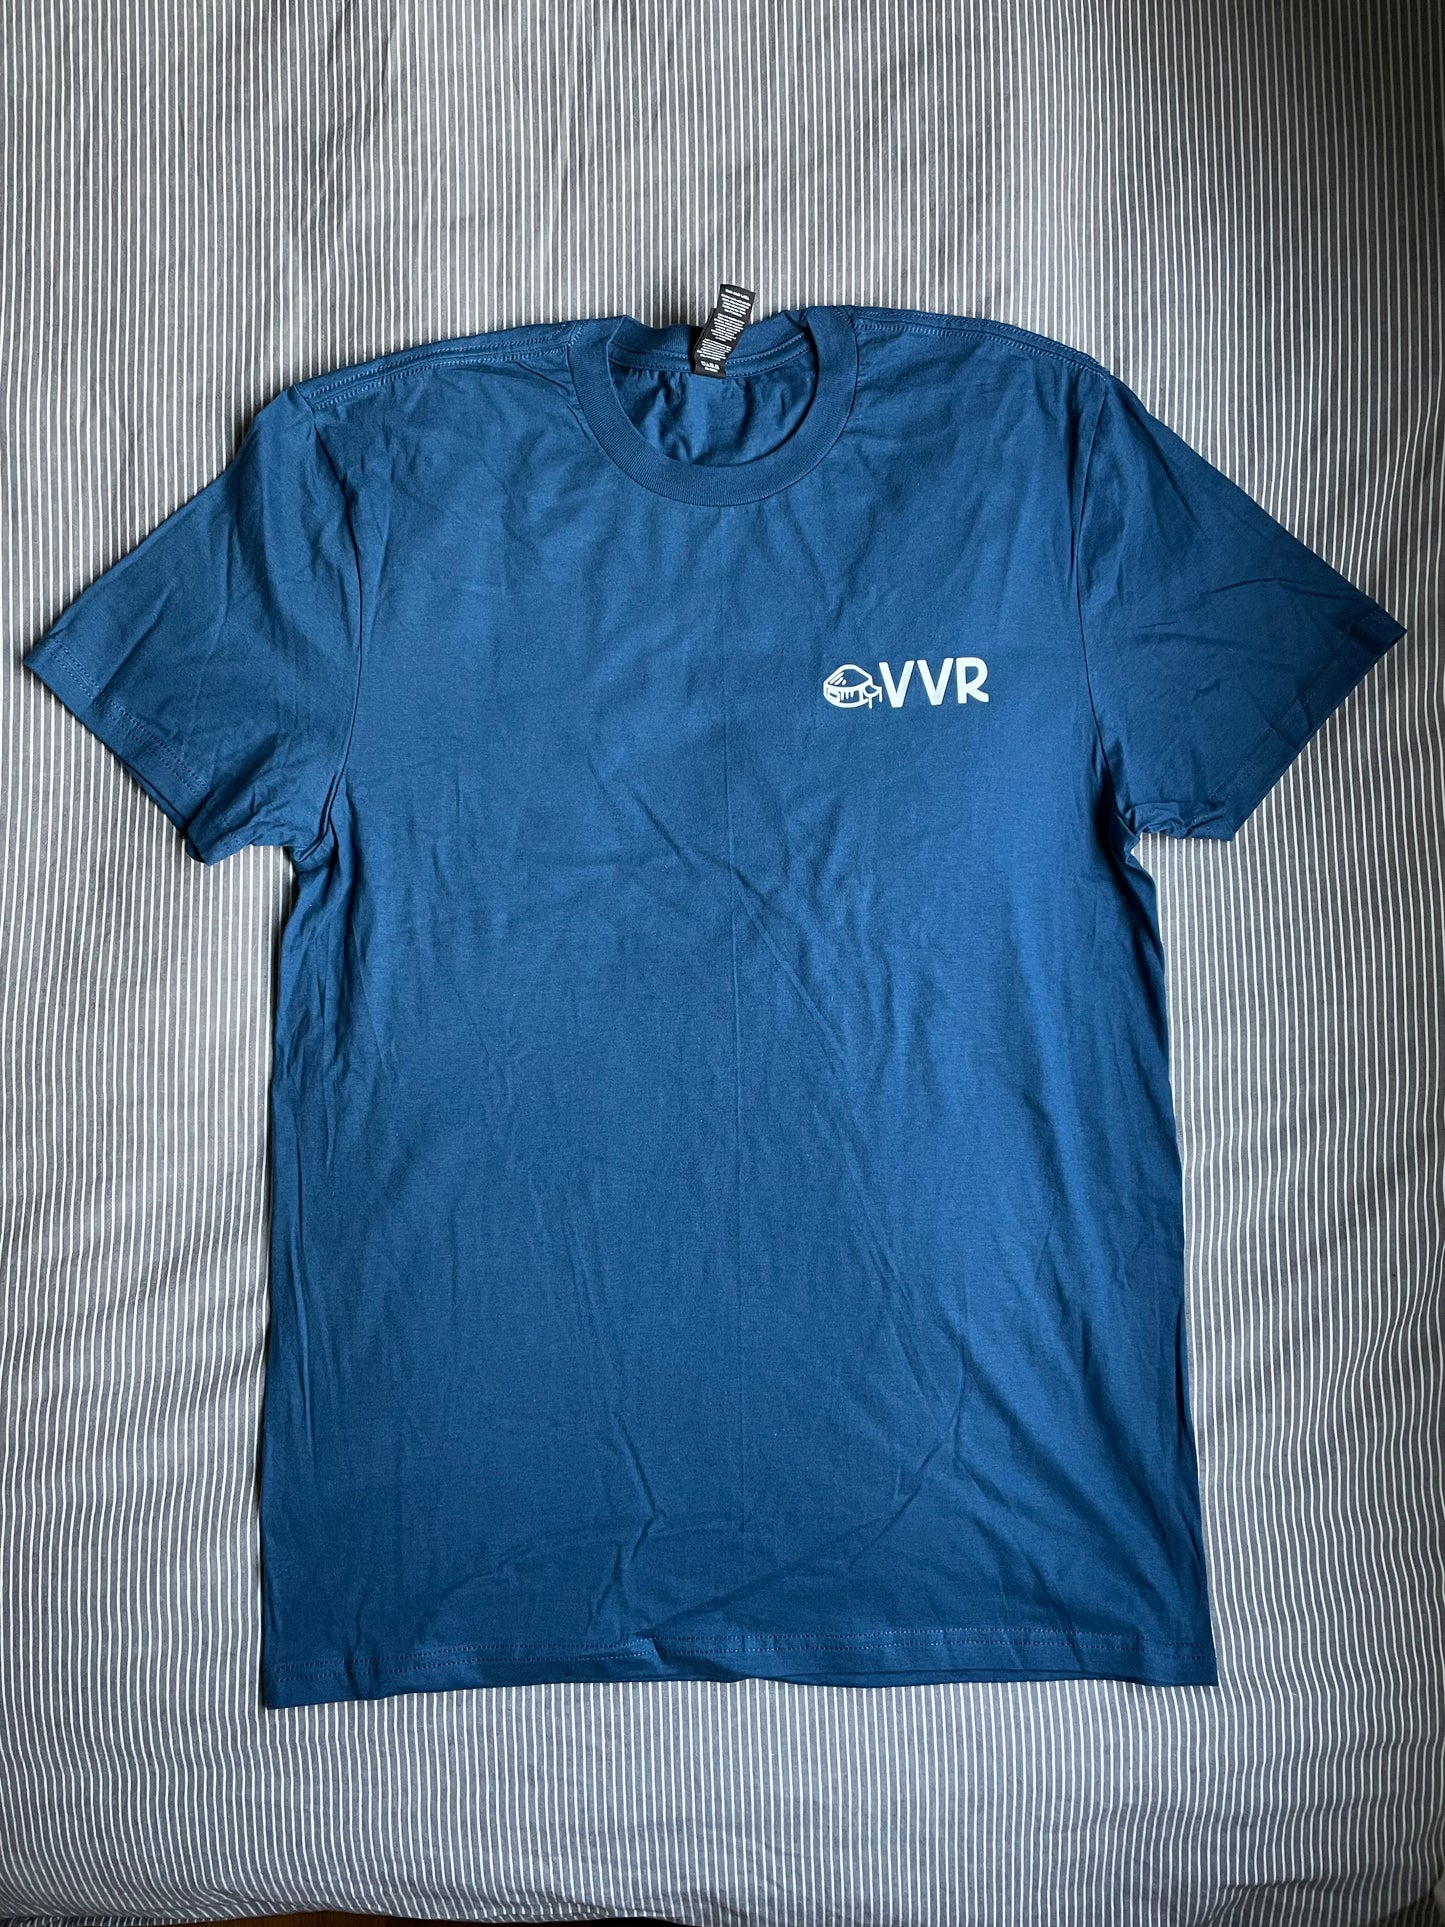 VVR Yurt Logo T-Shirt - [New Design!]